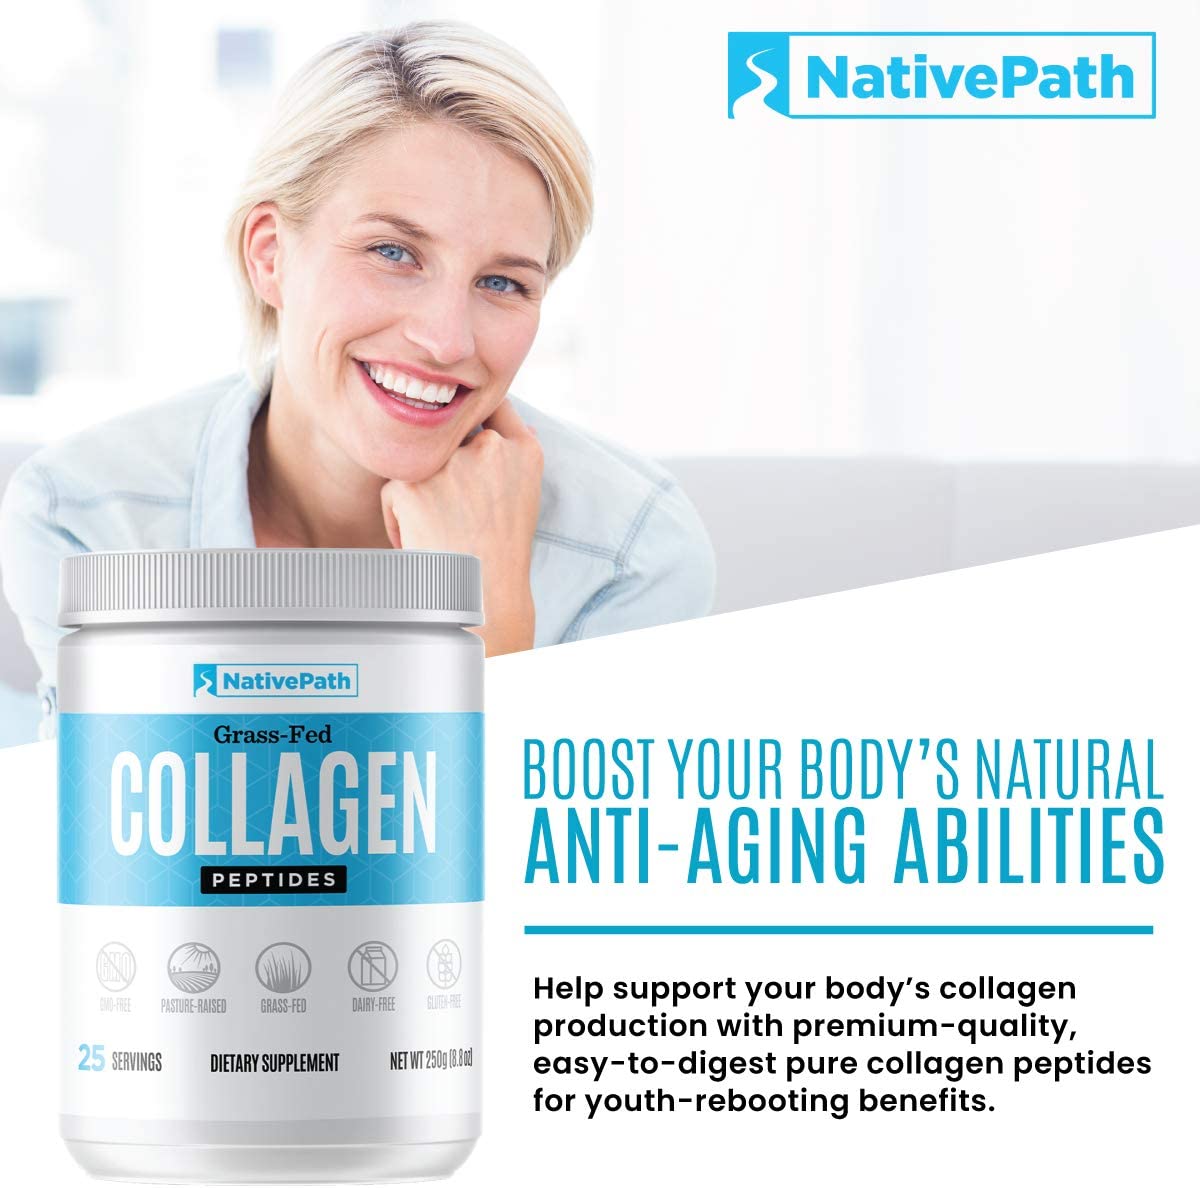 nativepath-grass-fed-collagen